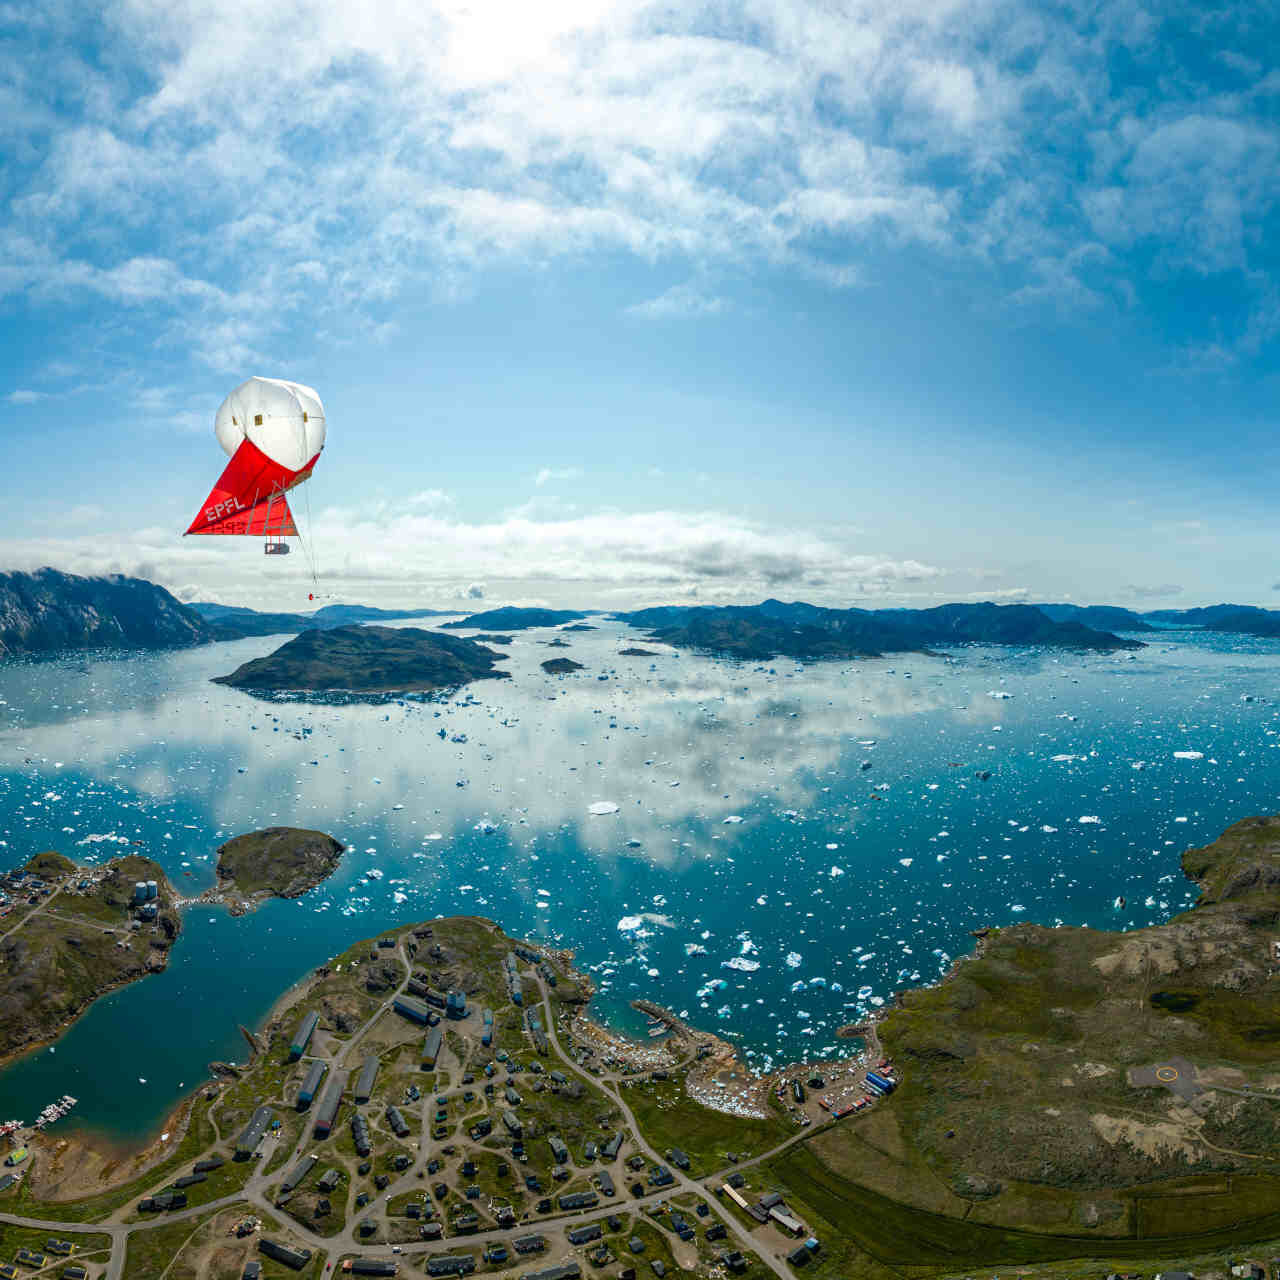 Ghiacciai: comprendere il cambiamento climatico studiando quello che avviene in Groenlandia